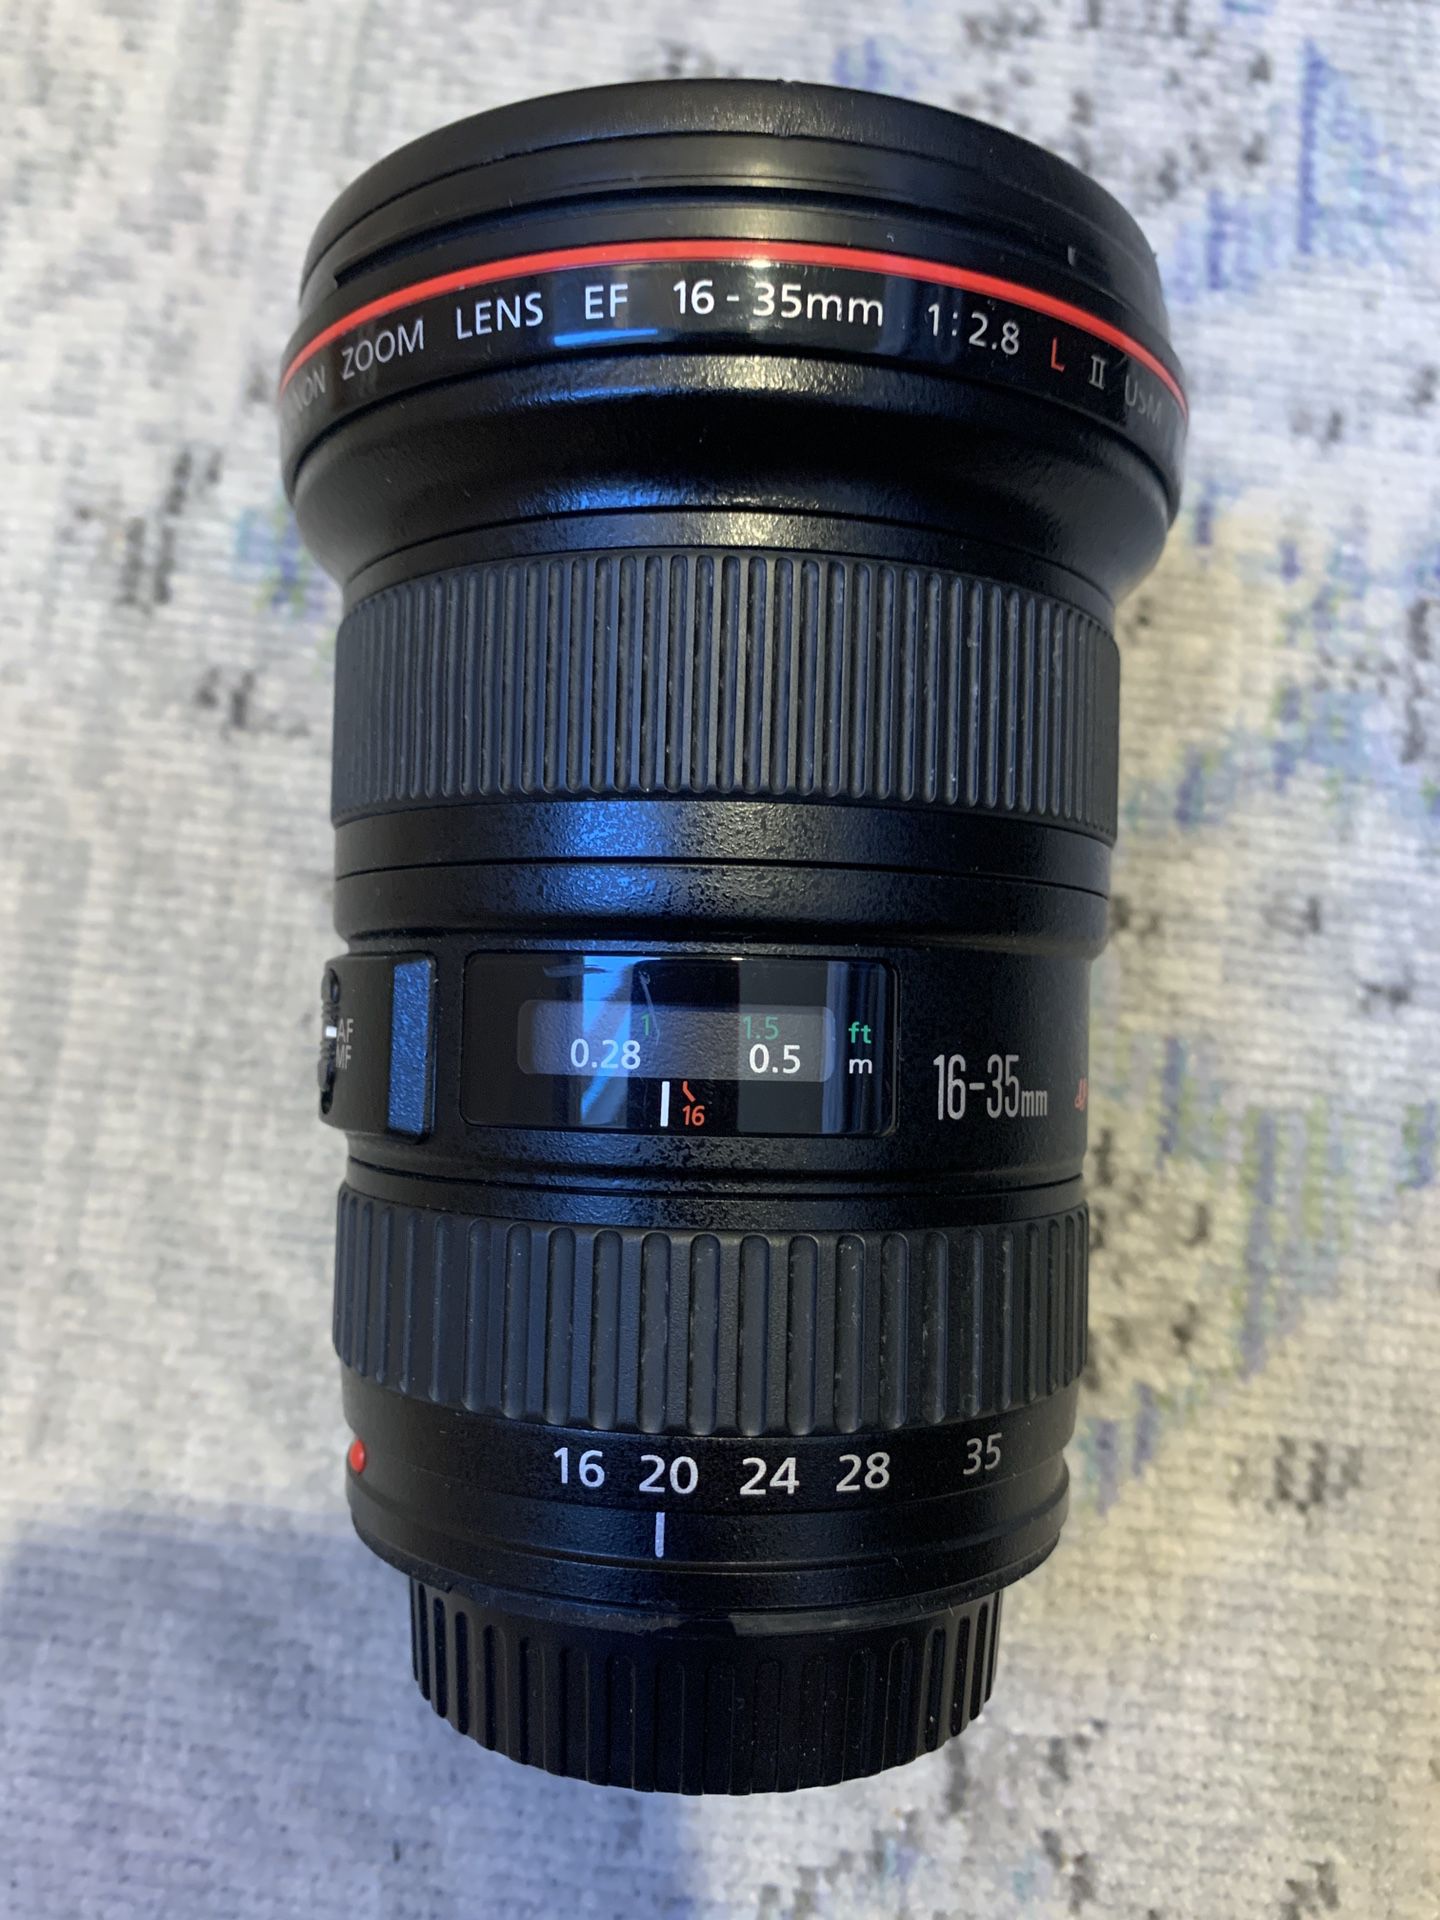 Canon Zoom Lens EF 16-35mm f2.8 L II USM